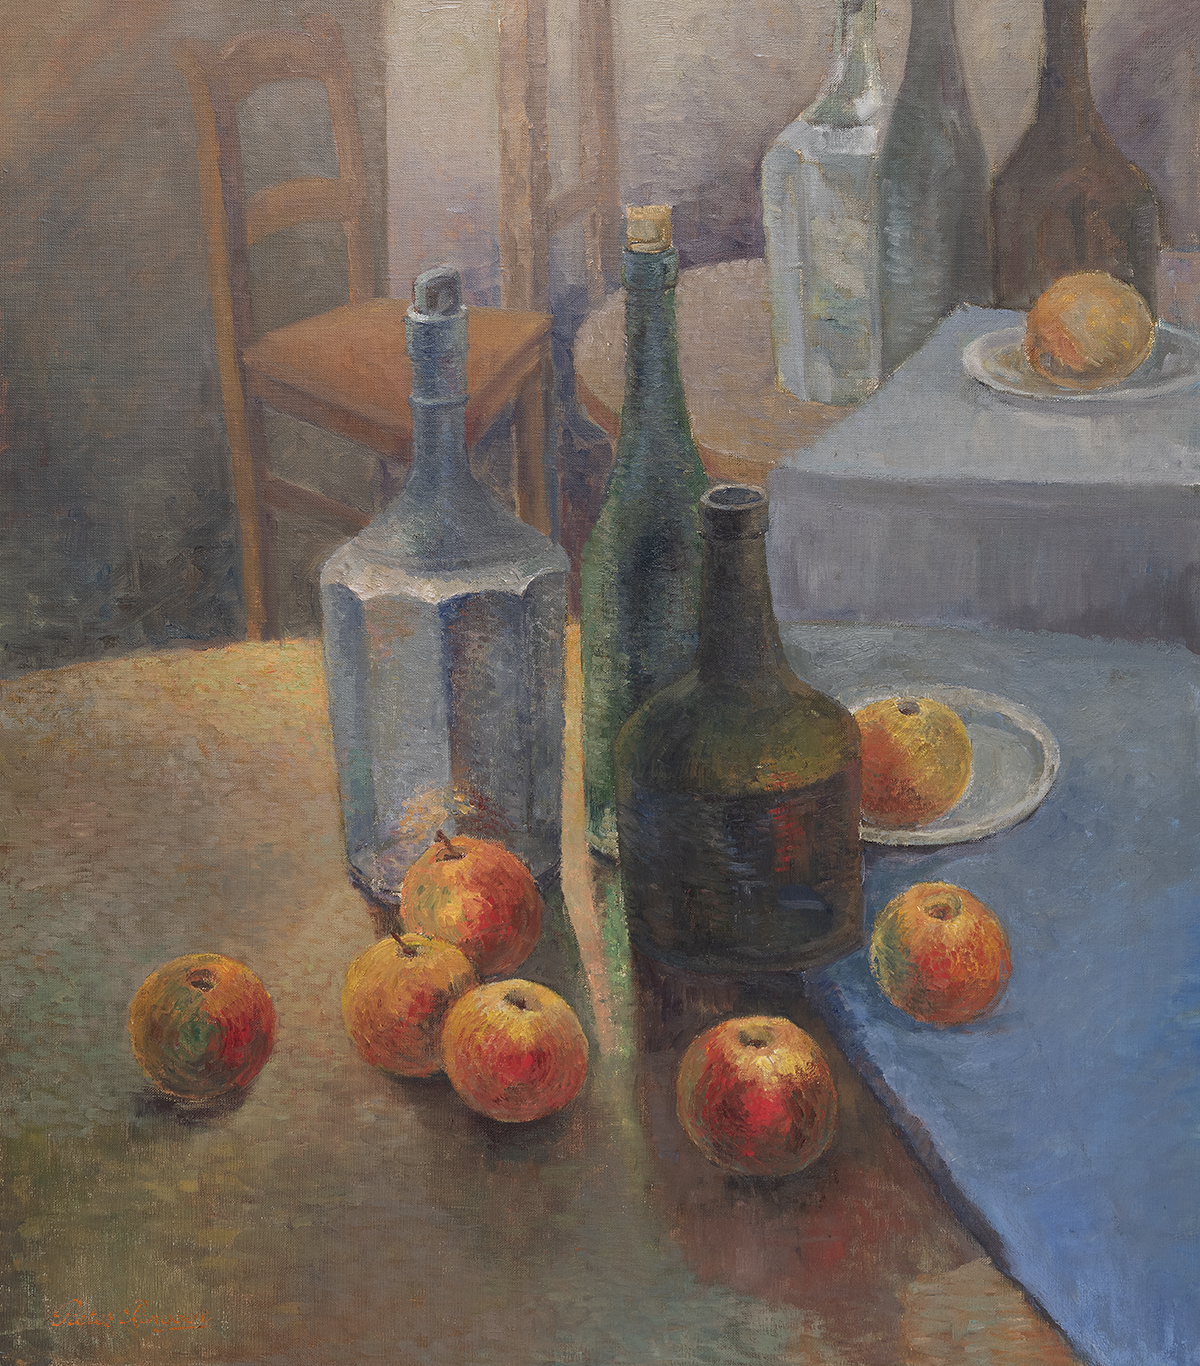 Stilleven schilderij met appels en flessen in het atelier van de kunstenaar te Lebbeke.